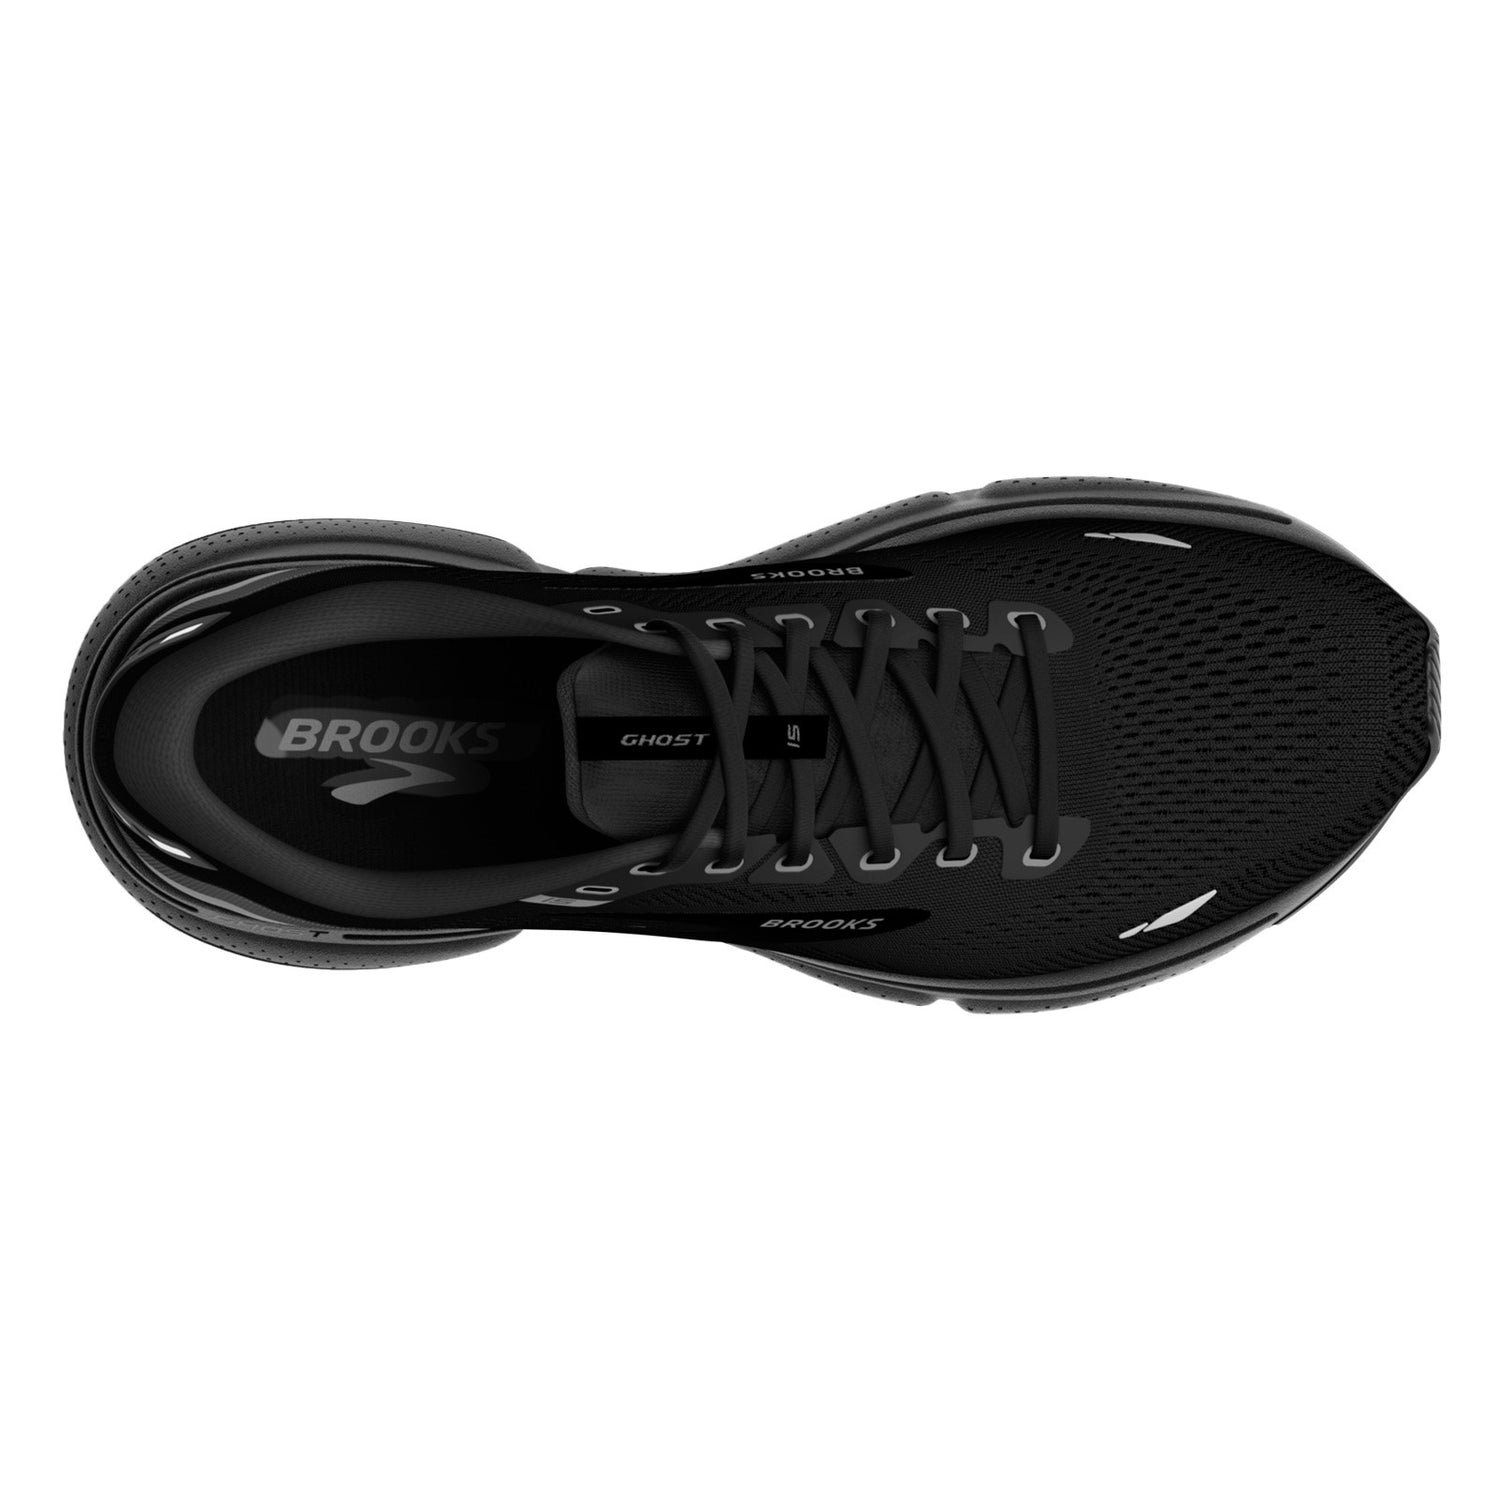 Peltz Shoes  Women's Brooks Ghost 15 Running Shoe - Wide Width Black/Black/Ebony 120380 1D 020